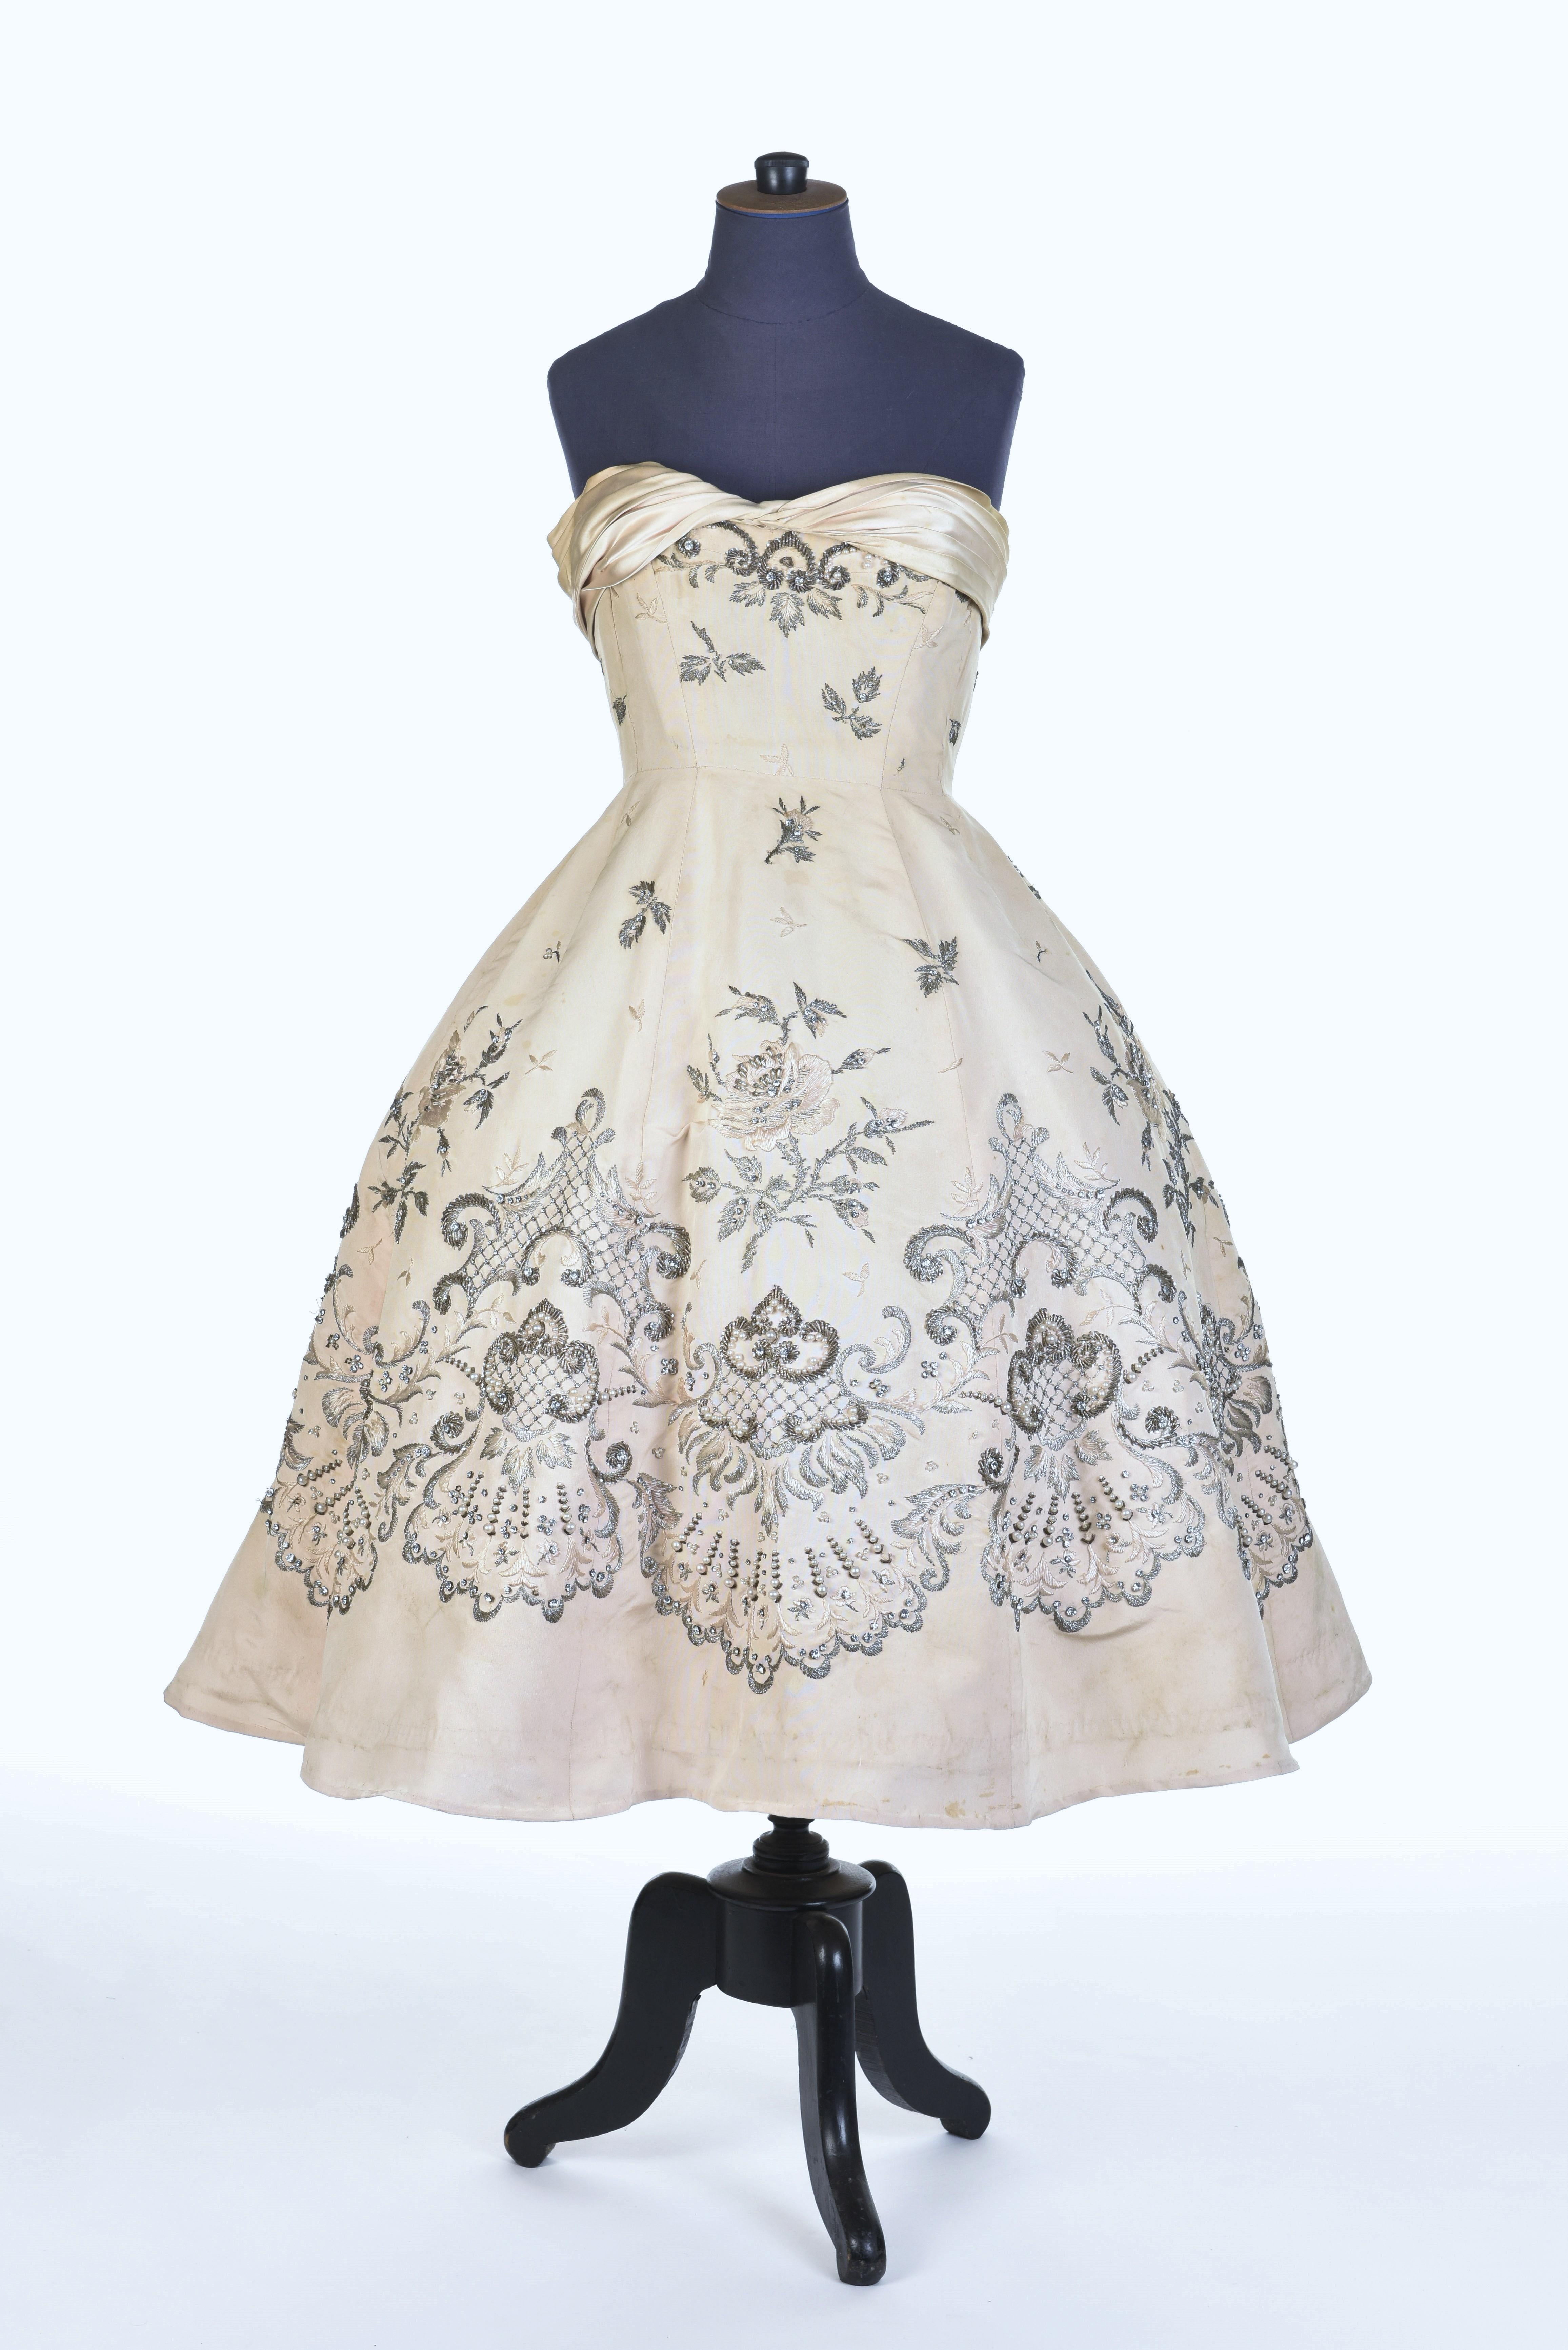 Robe de bal Pierre Balmain Couture en soie crème numérotée 87681, datant d'environ 1955/1957 3